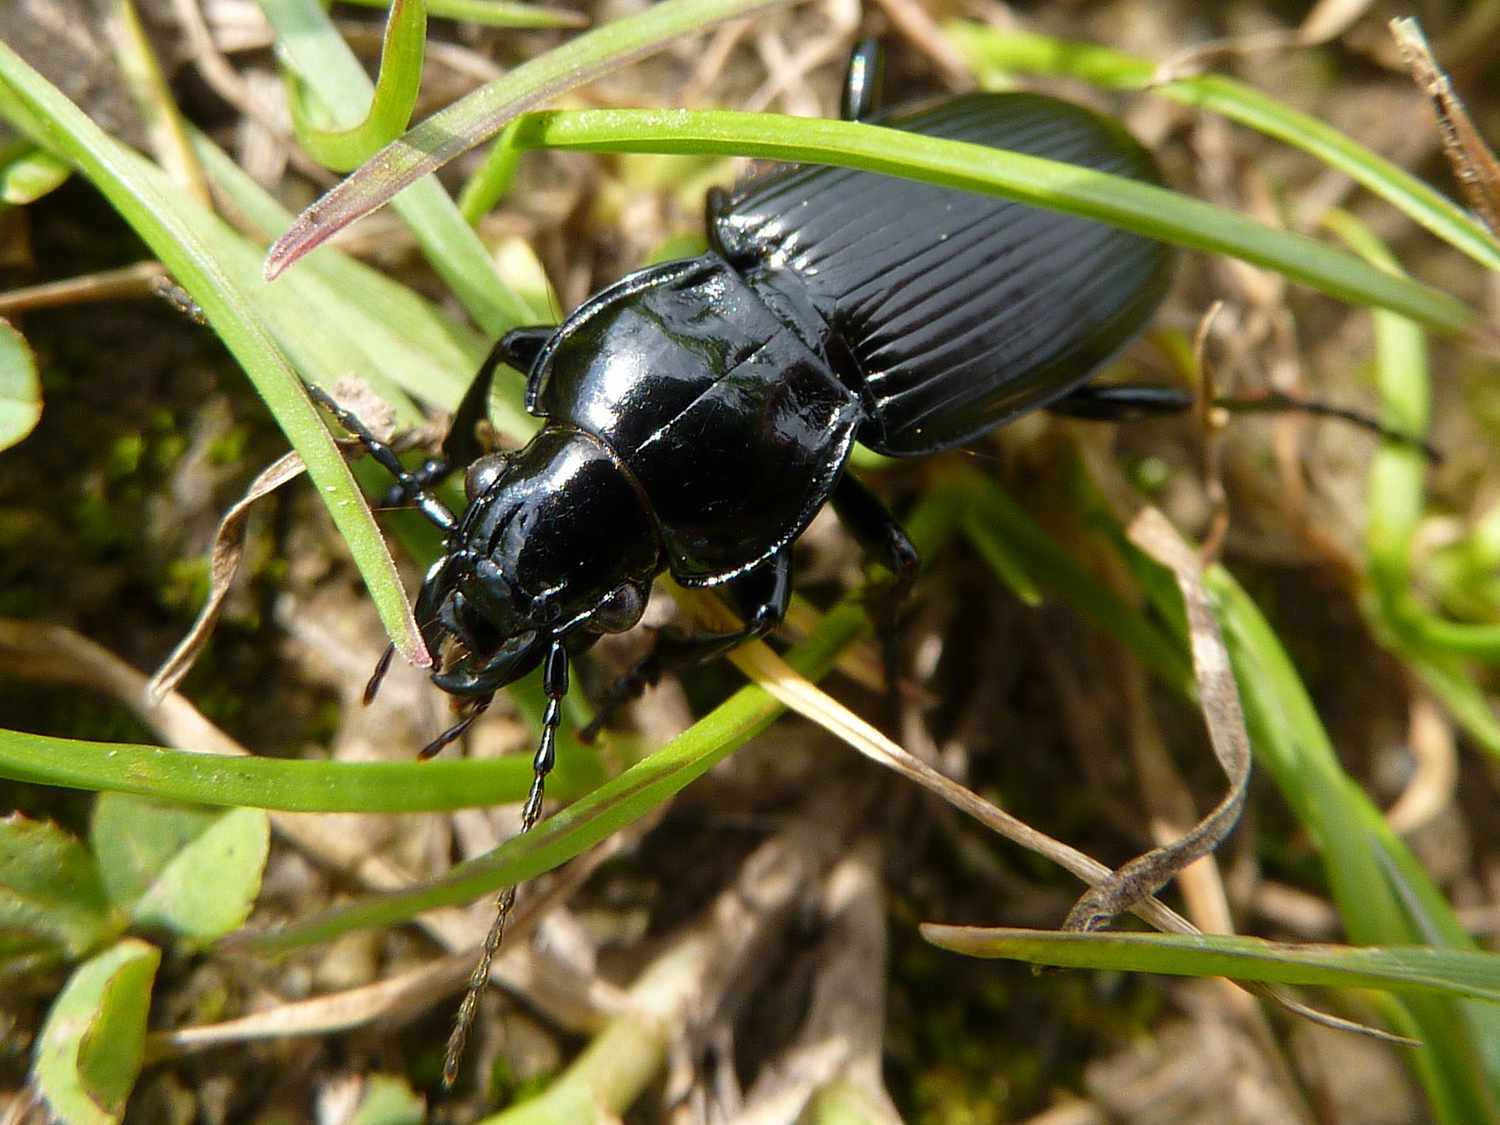 Black beetles